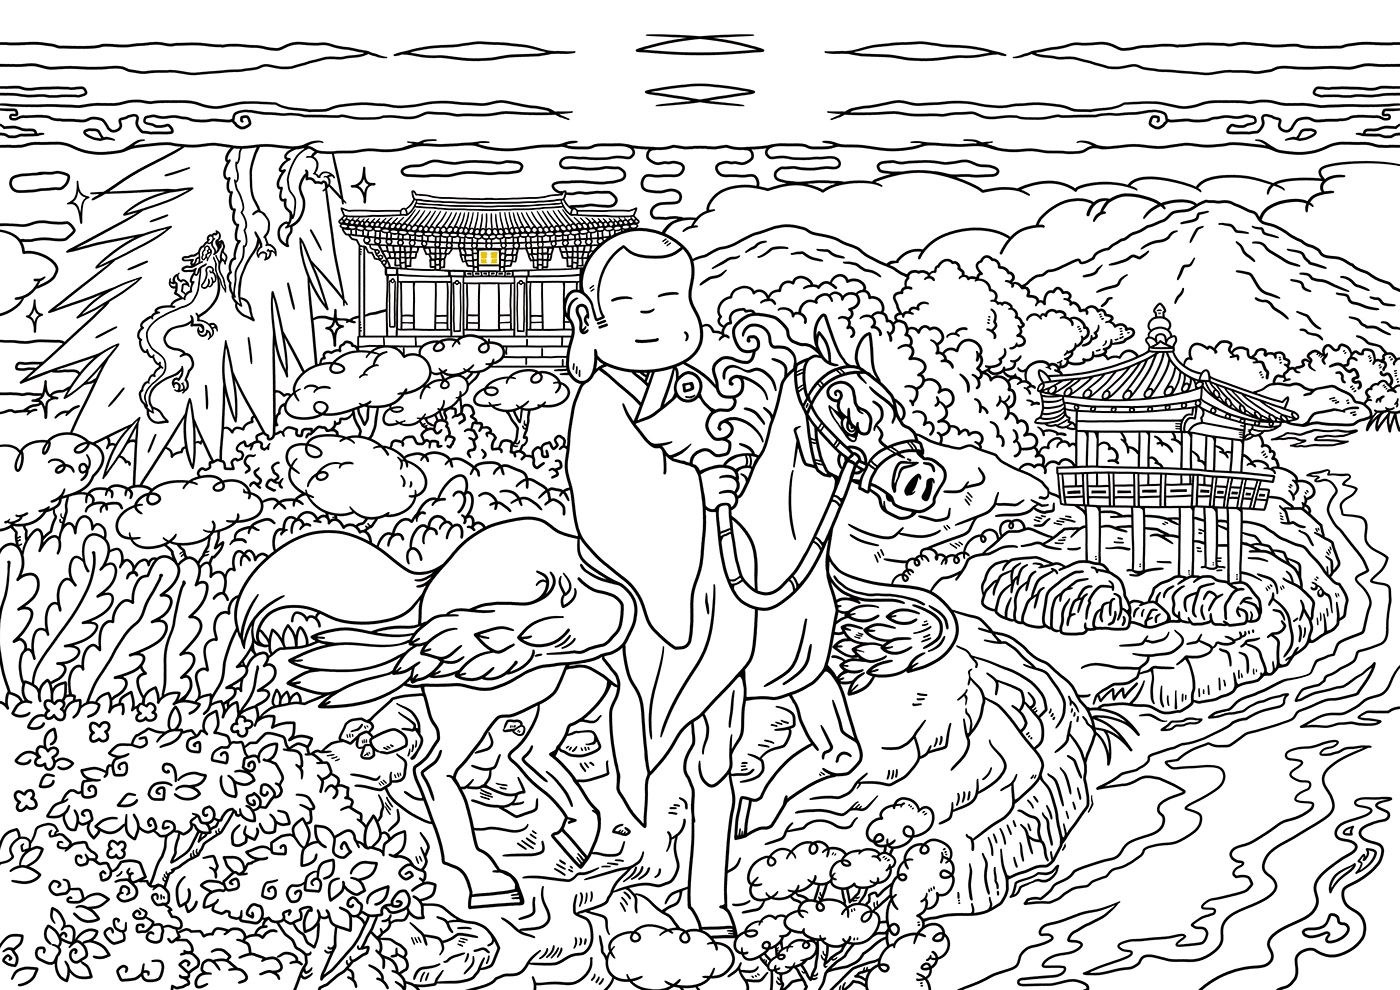 설화 전통 tale traditional Korea artwork Digital Art  ILLUSTRATION  cartoon digital illustration